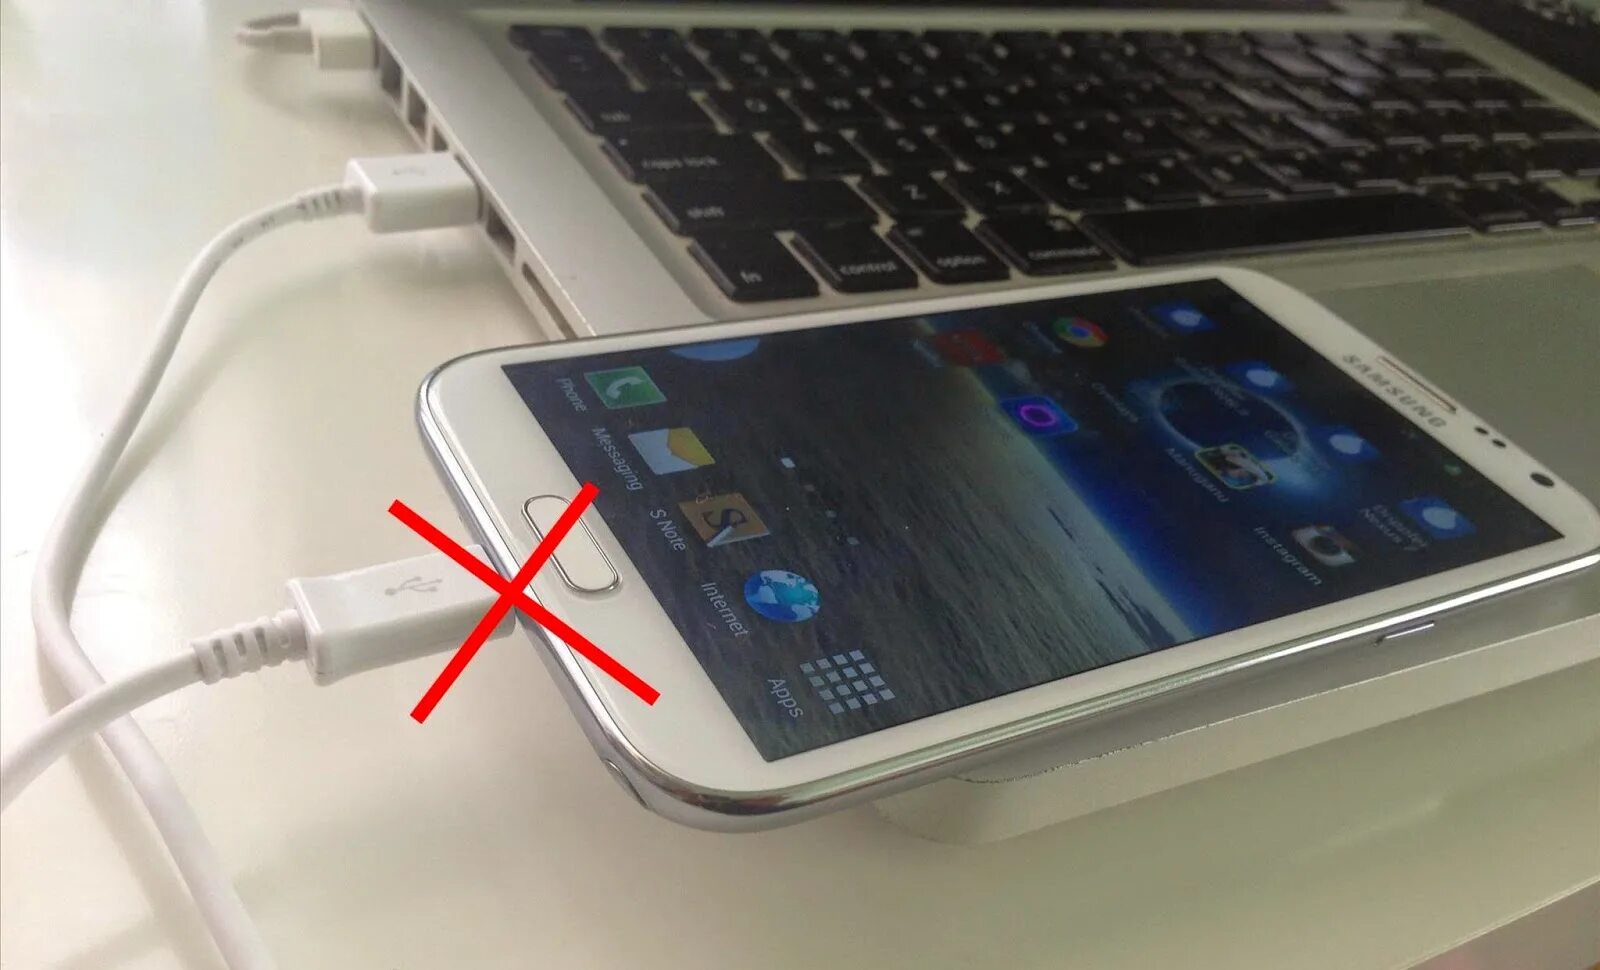 Как сделать чтобы андроид быстро зарядился. Samsung Phone on charge. Галакси ноут 8 зарядка. Когда заряжается телефон пузырики. Как быстро зарядить телефон андроид за 5 минут самсунг.